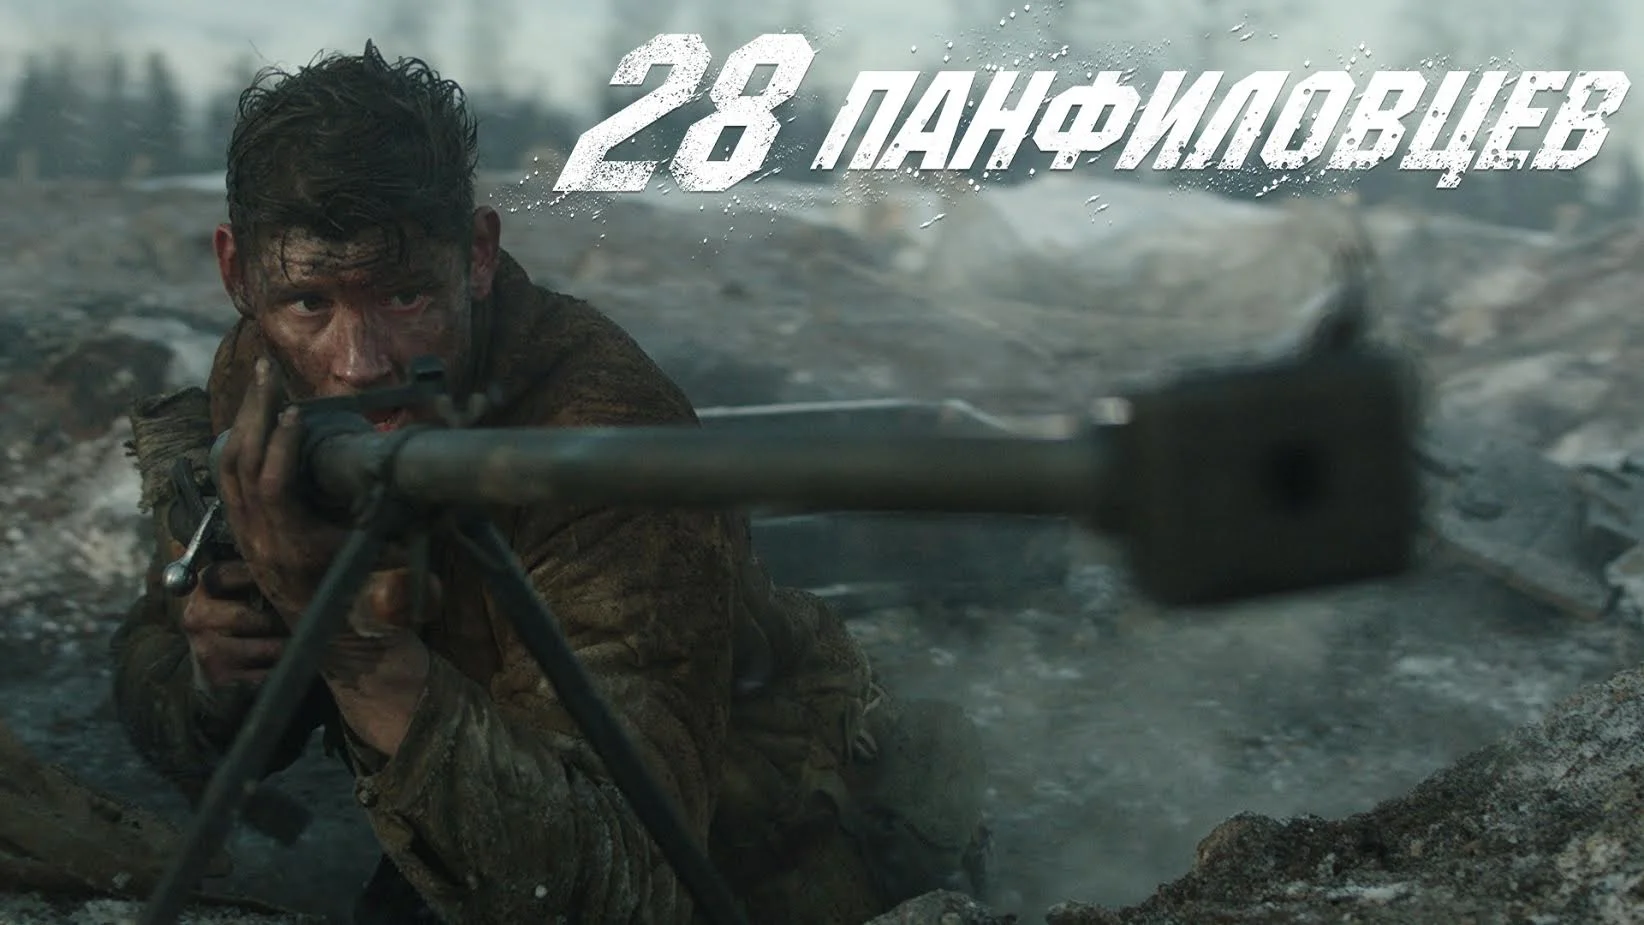 Фильм «28 панфиловцев» вышел в российский прокат - фото 1